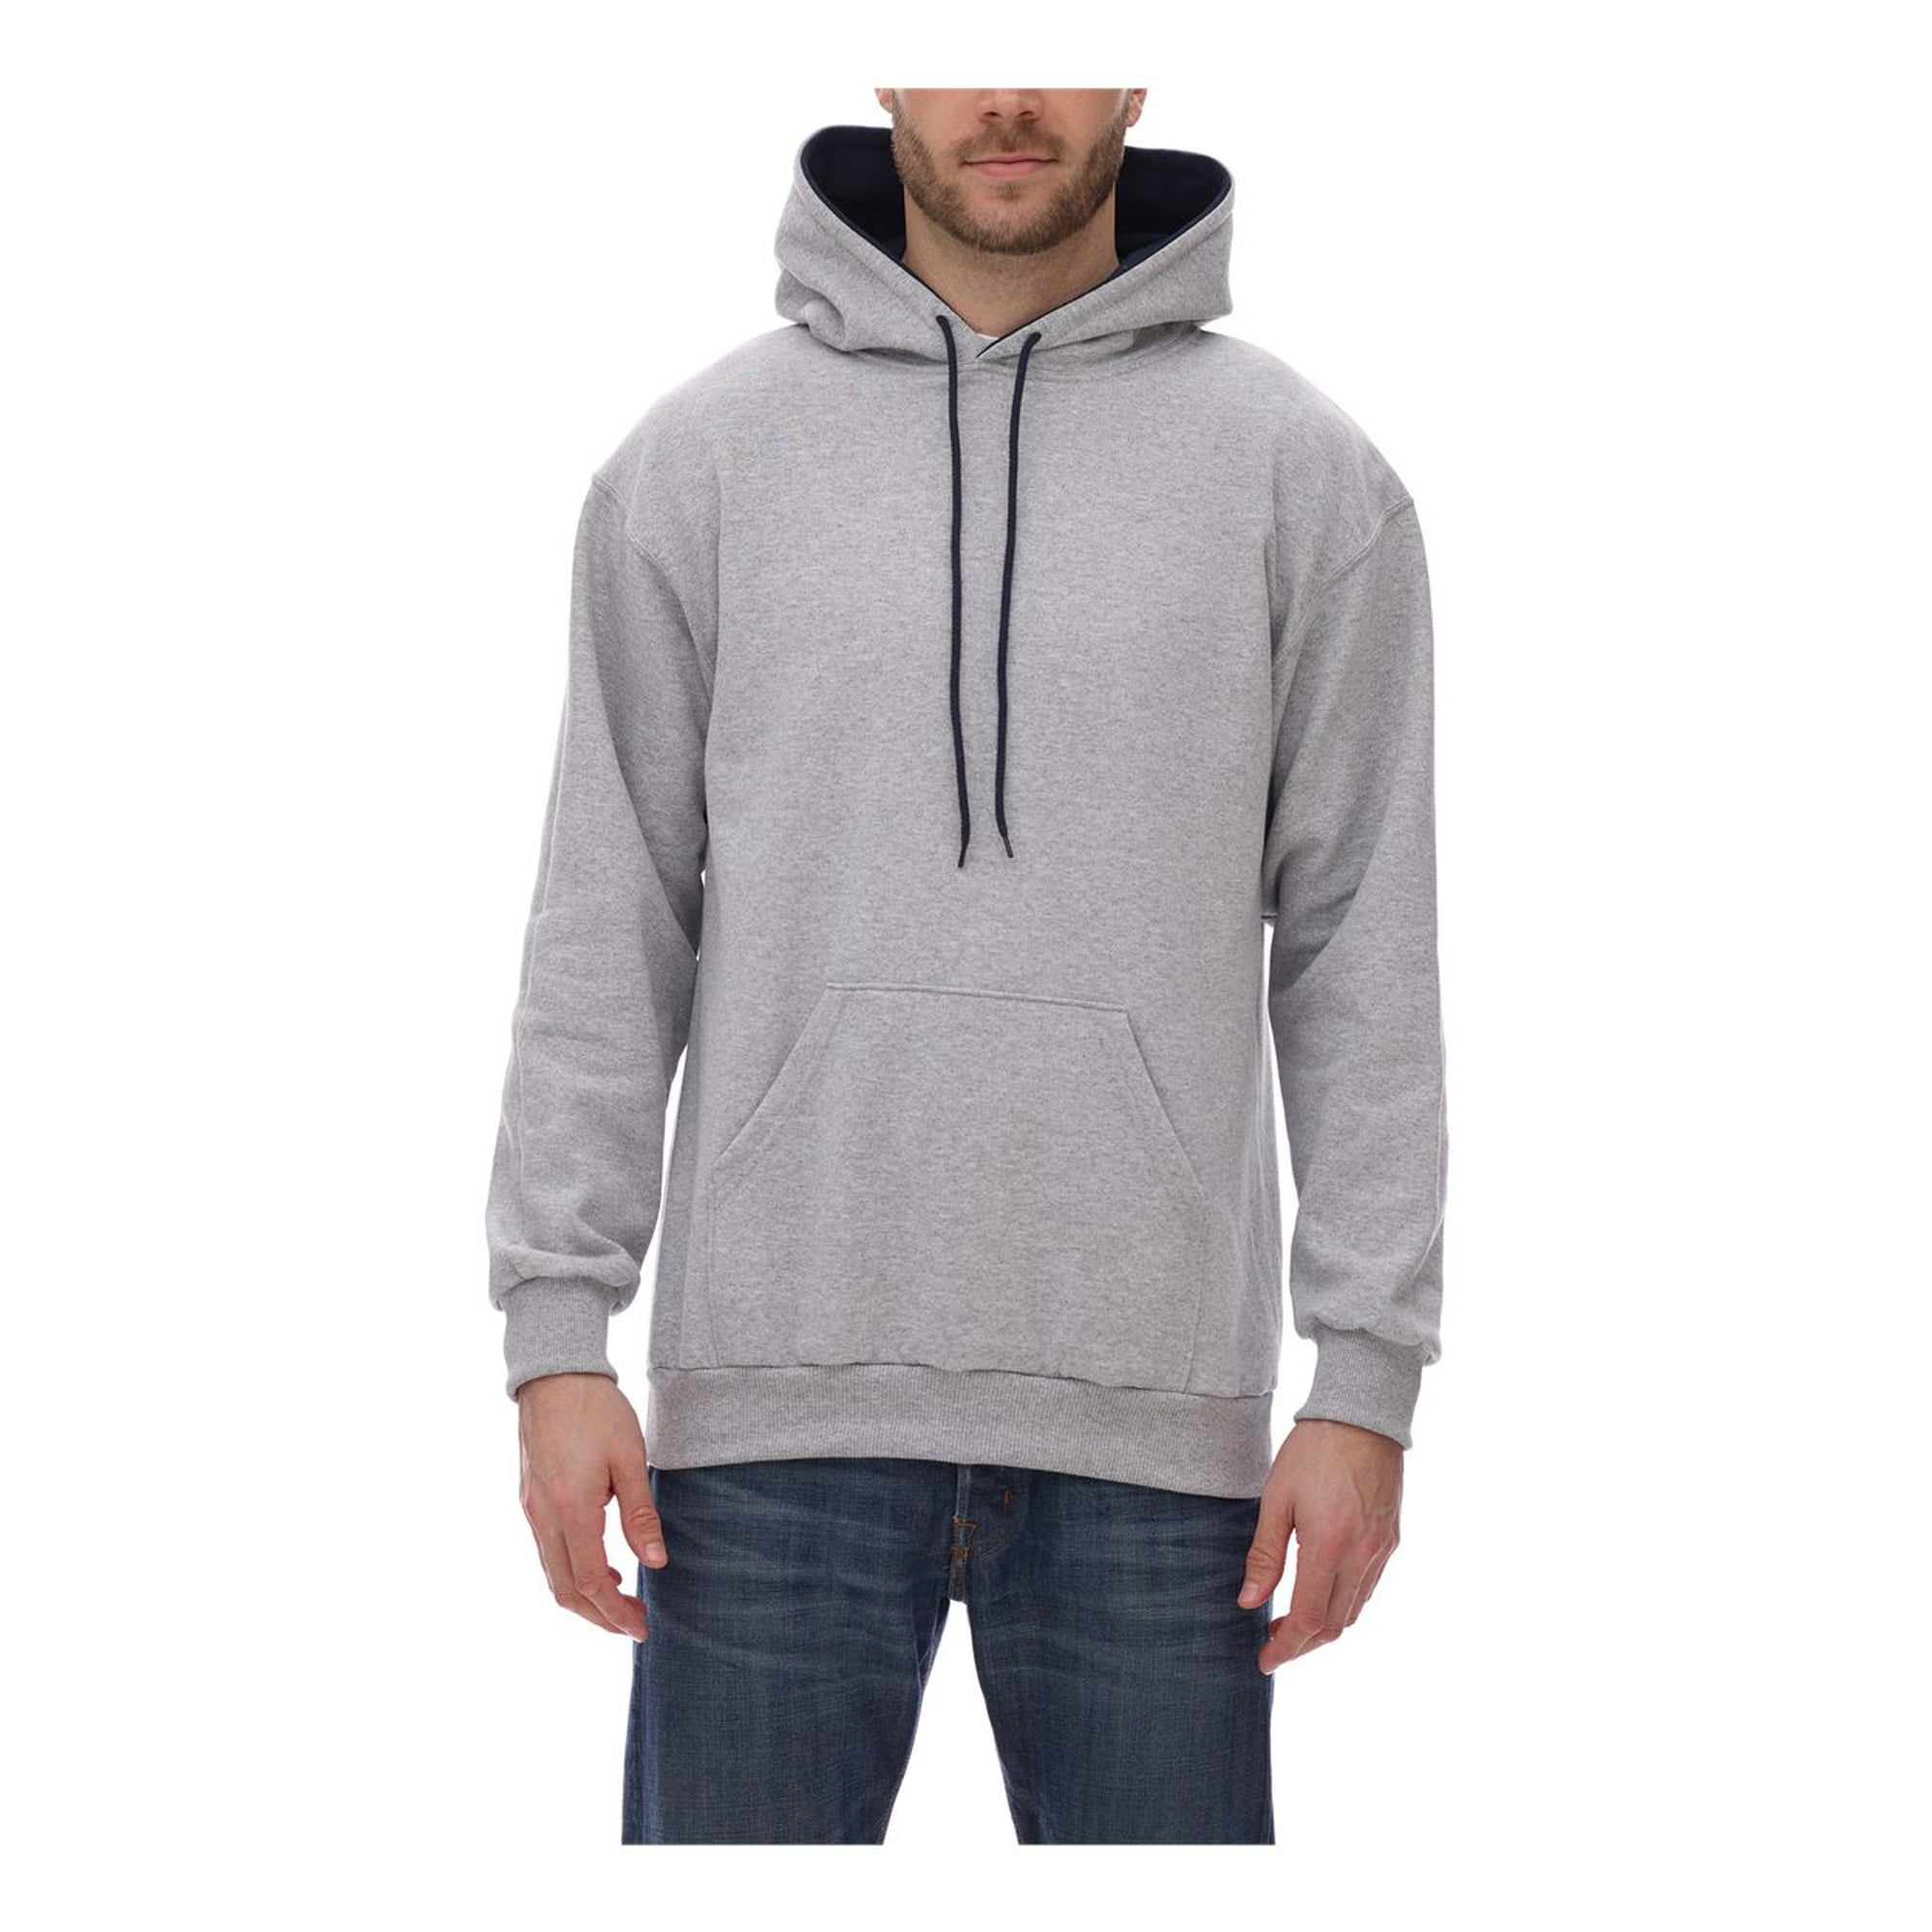 King Fashion Two-Tone Hooded Sweatshirt KF9041 | Walmart Canada